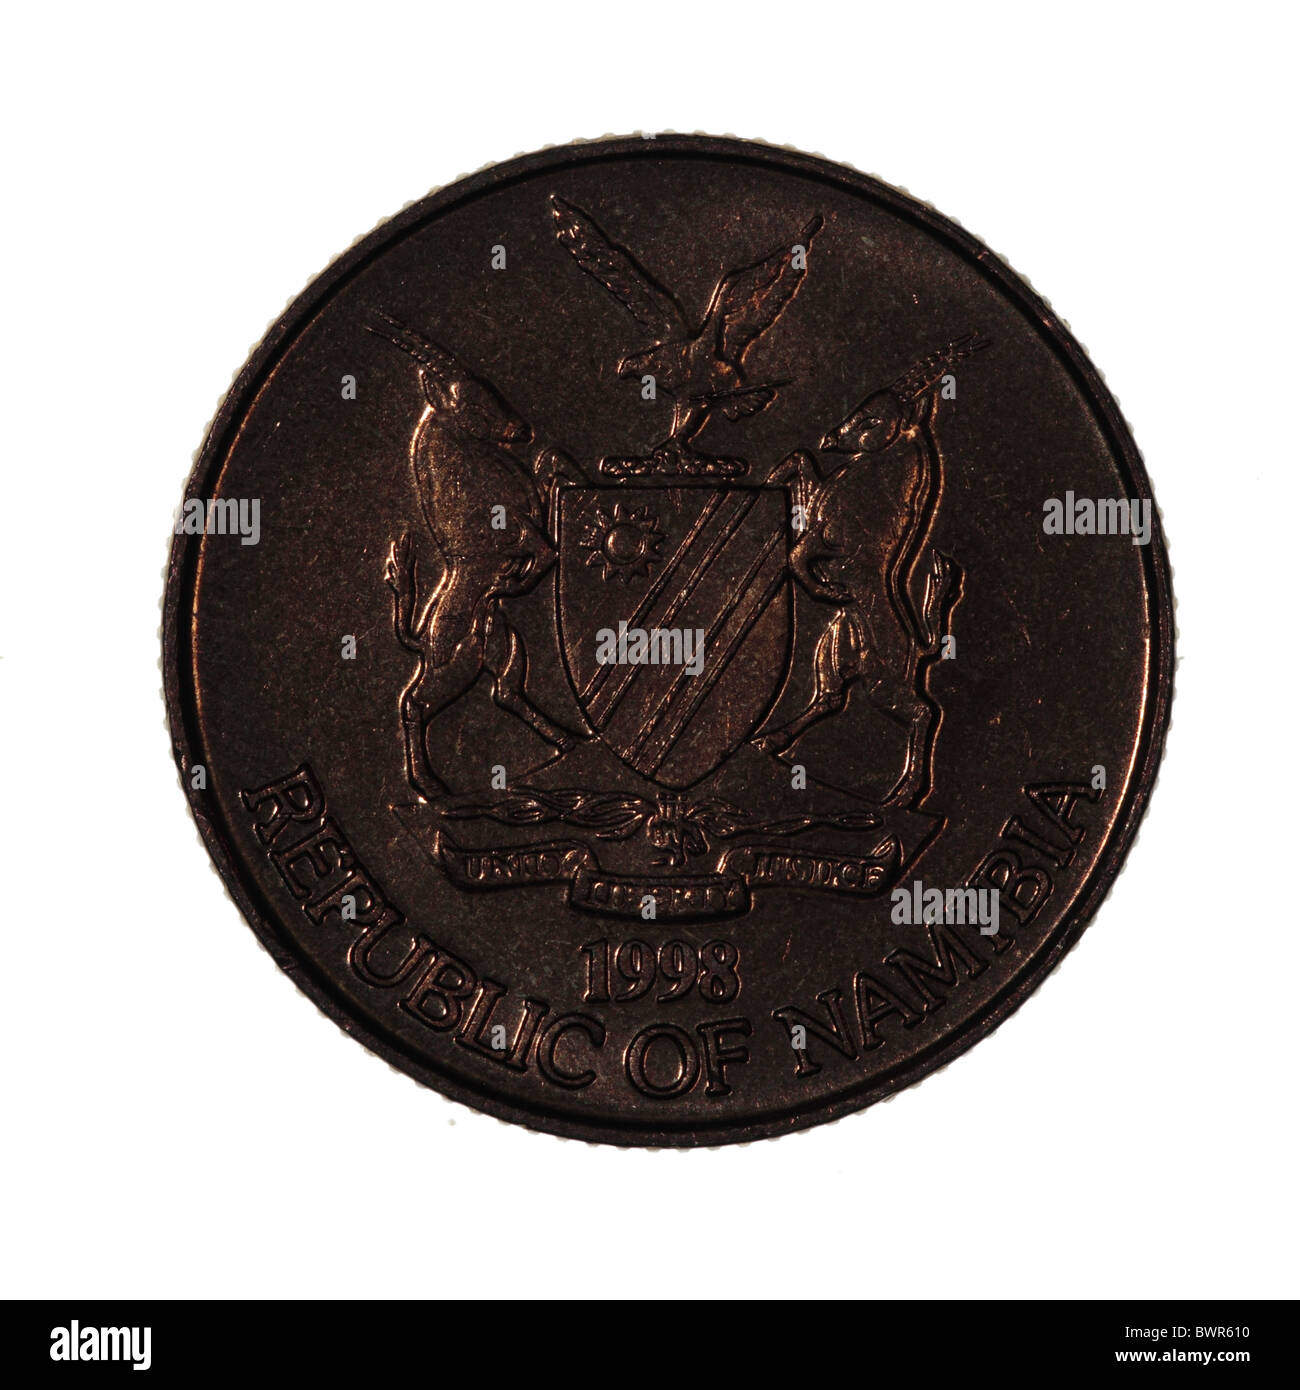 Namibian dollar coin Stock Photo